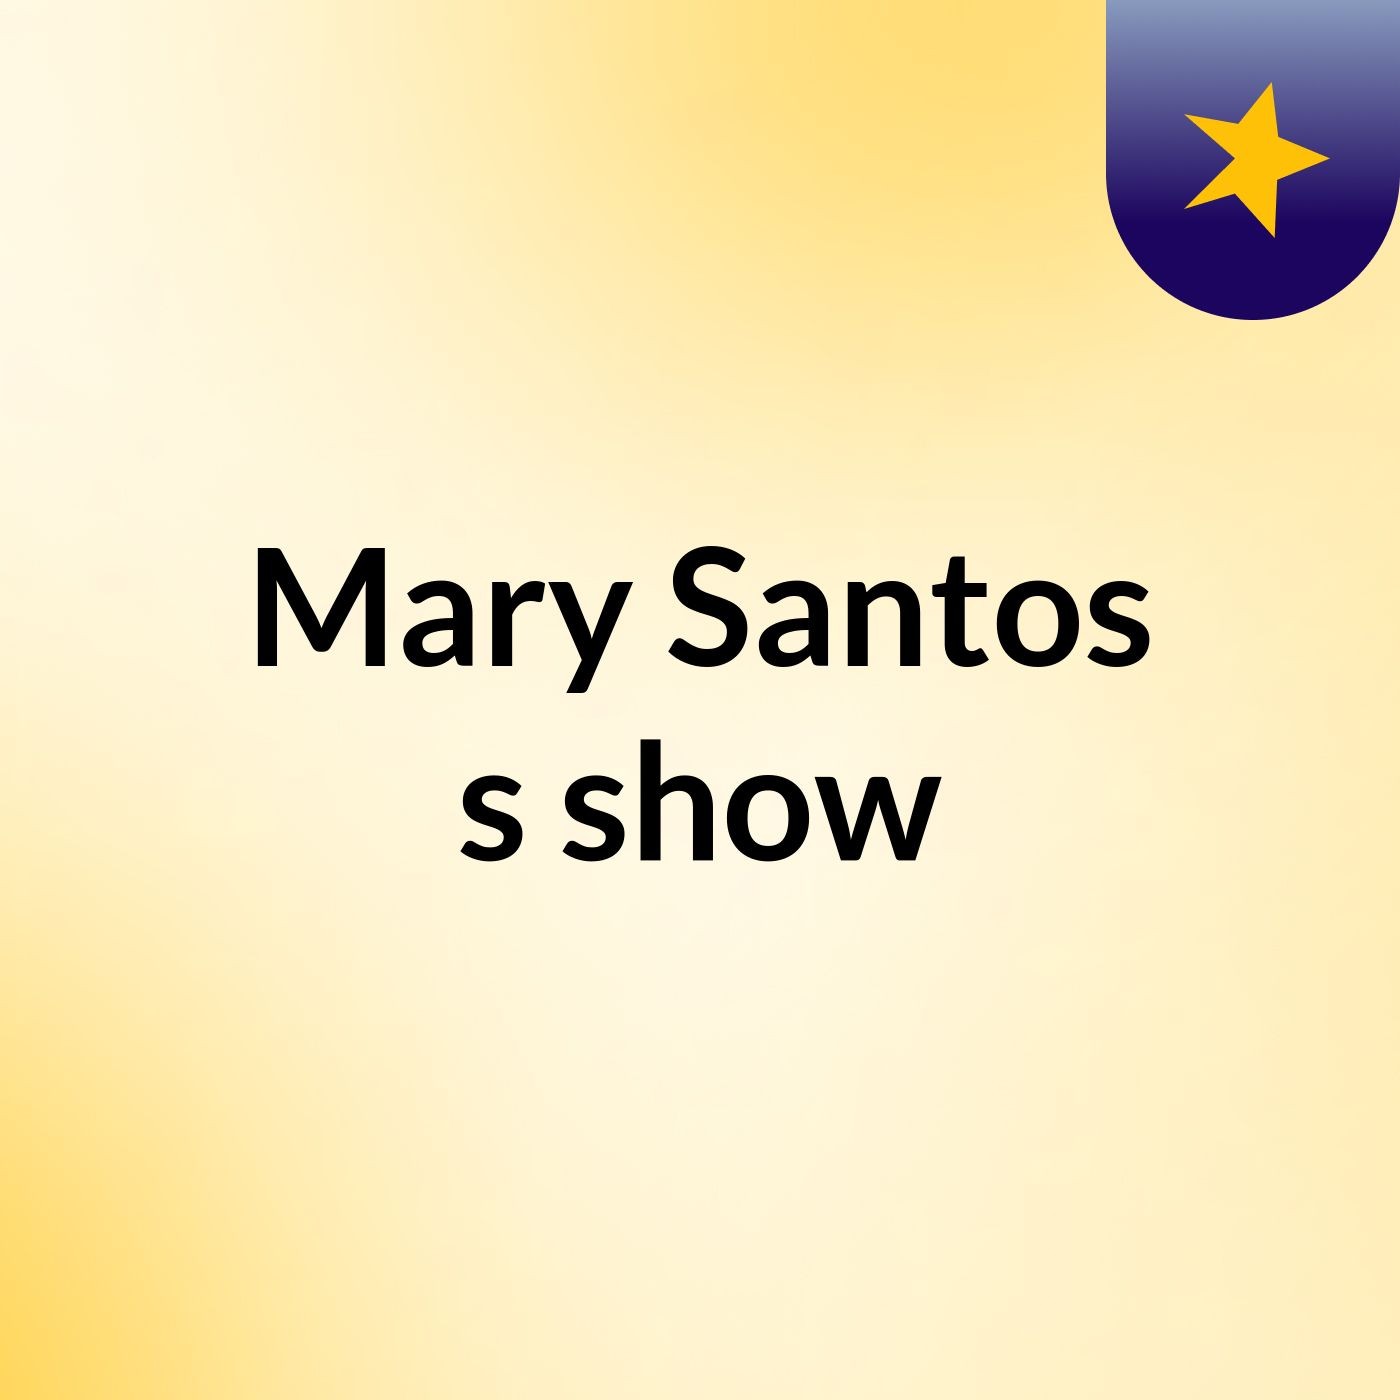 Mary Santos's show